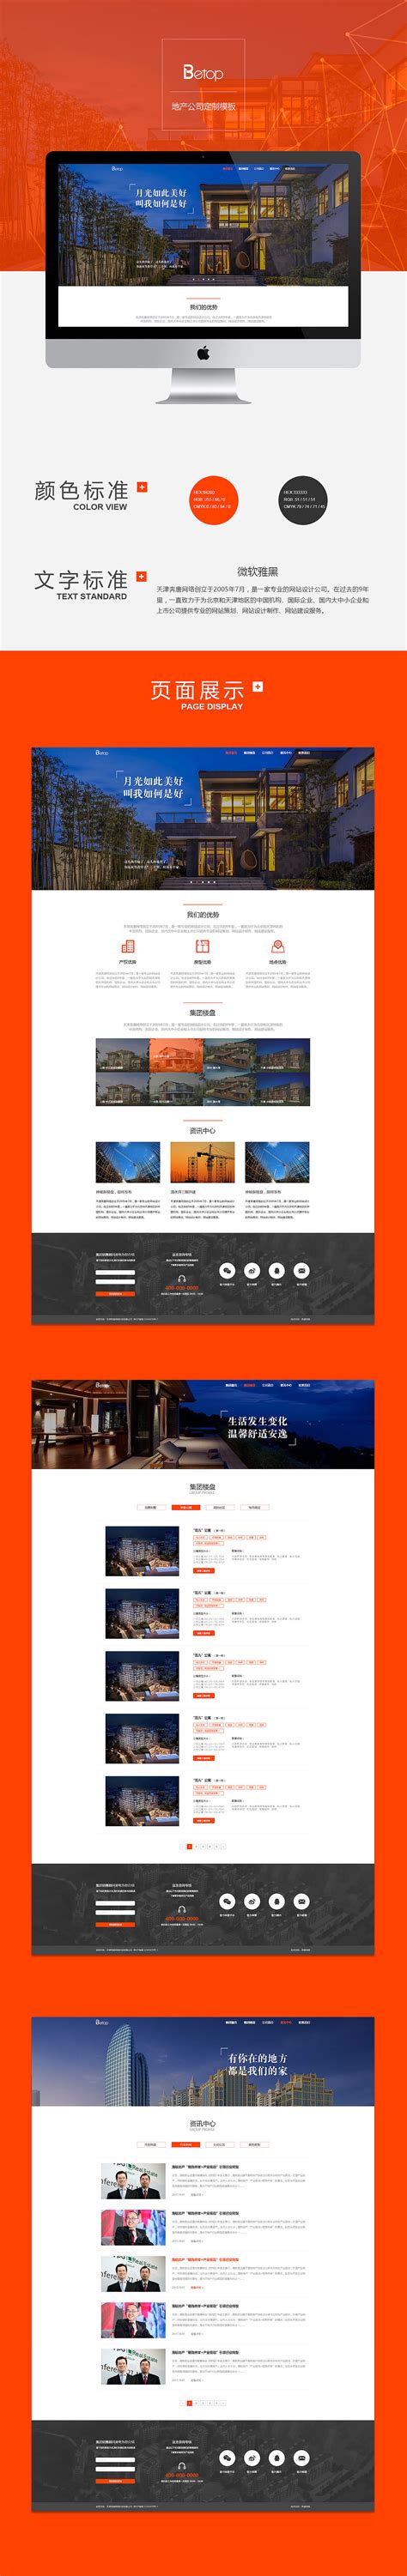 天津外贸网站建设--品牌网站建设-品牌网站建设-天津小程序|公众号开发|天津APP开发|网站建设-天津犀思科技-犀思科技